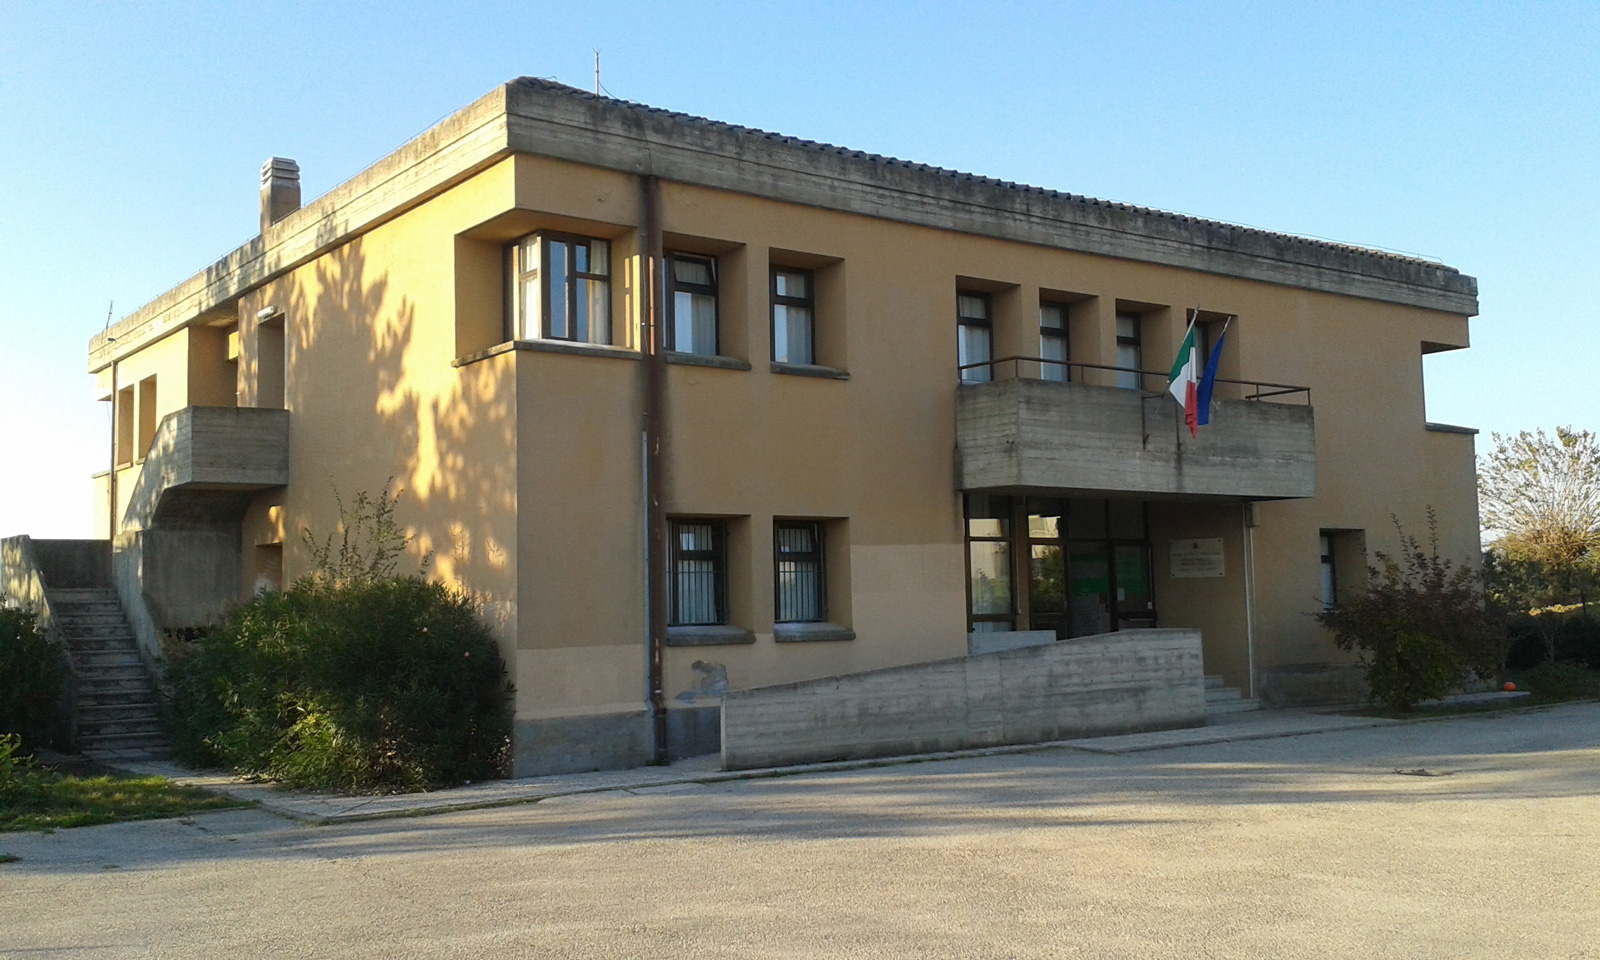 Scuola Primaria “Umberto Calzoni” di San Martino in Colle in provincia di Perugia